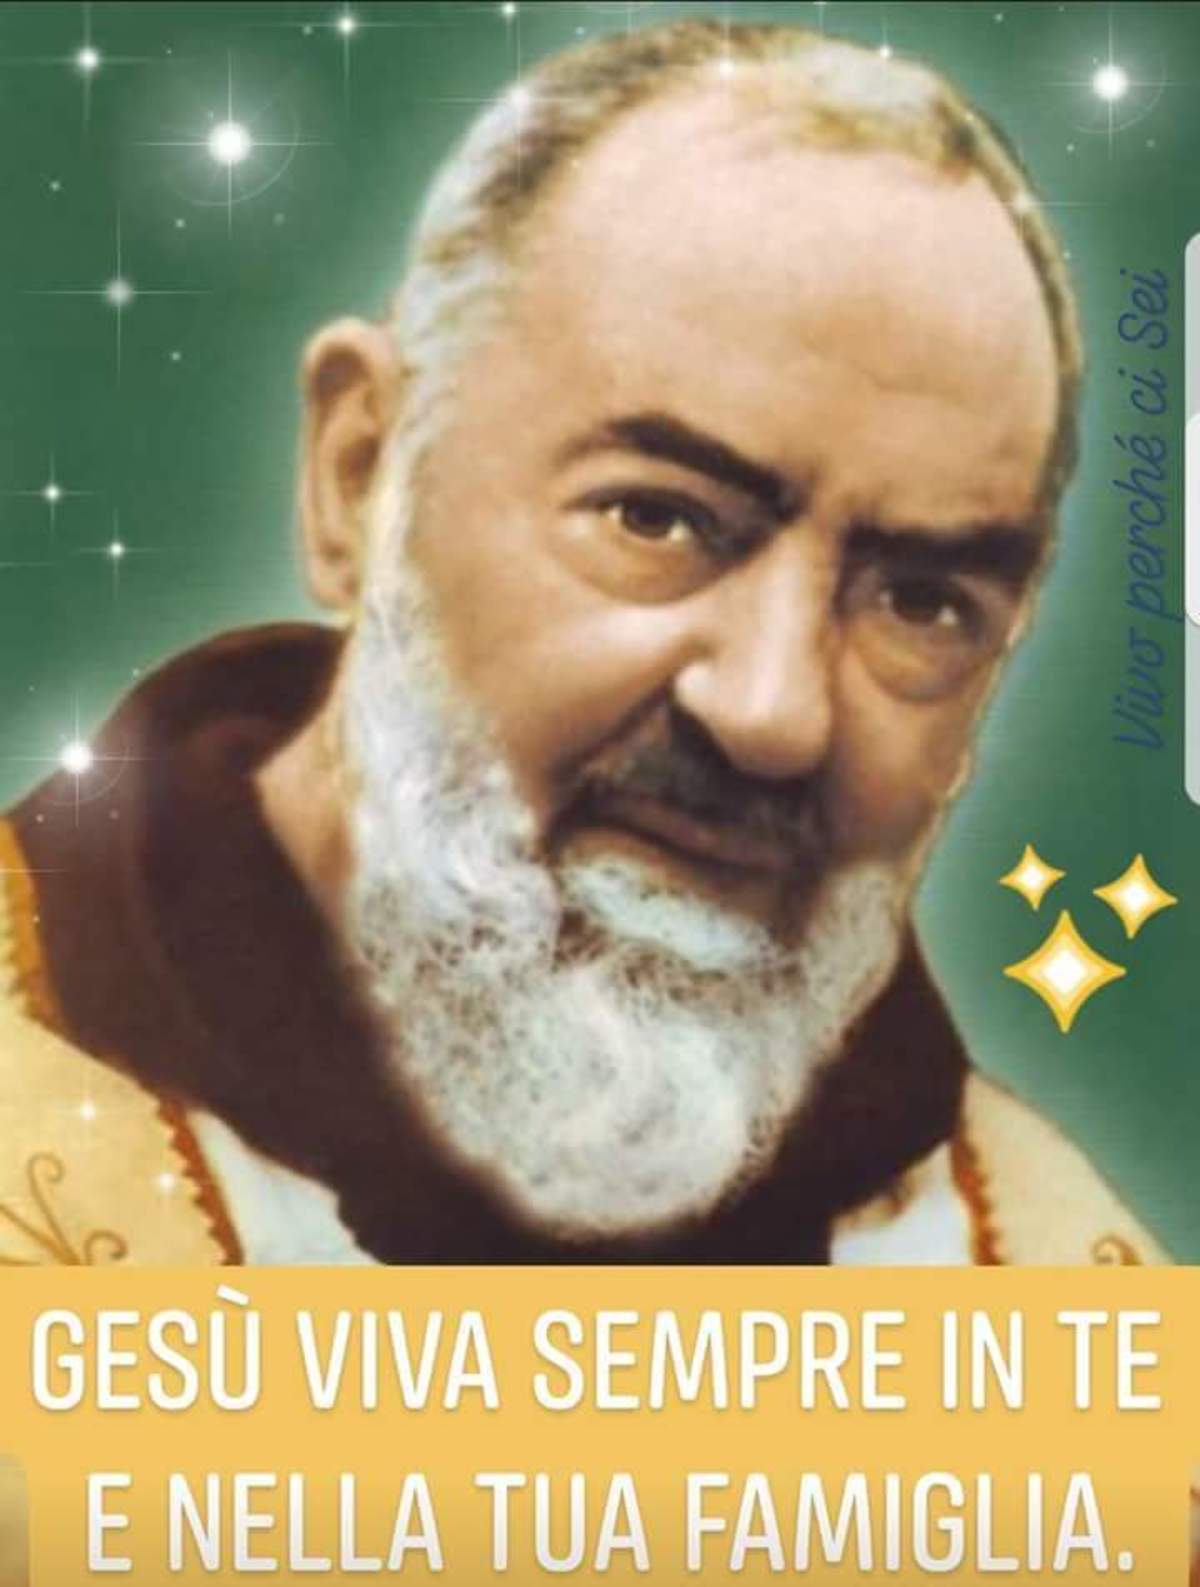 Immagini di Padre Pio foto 9022